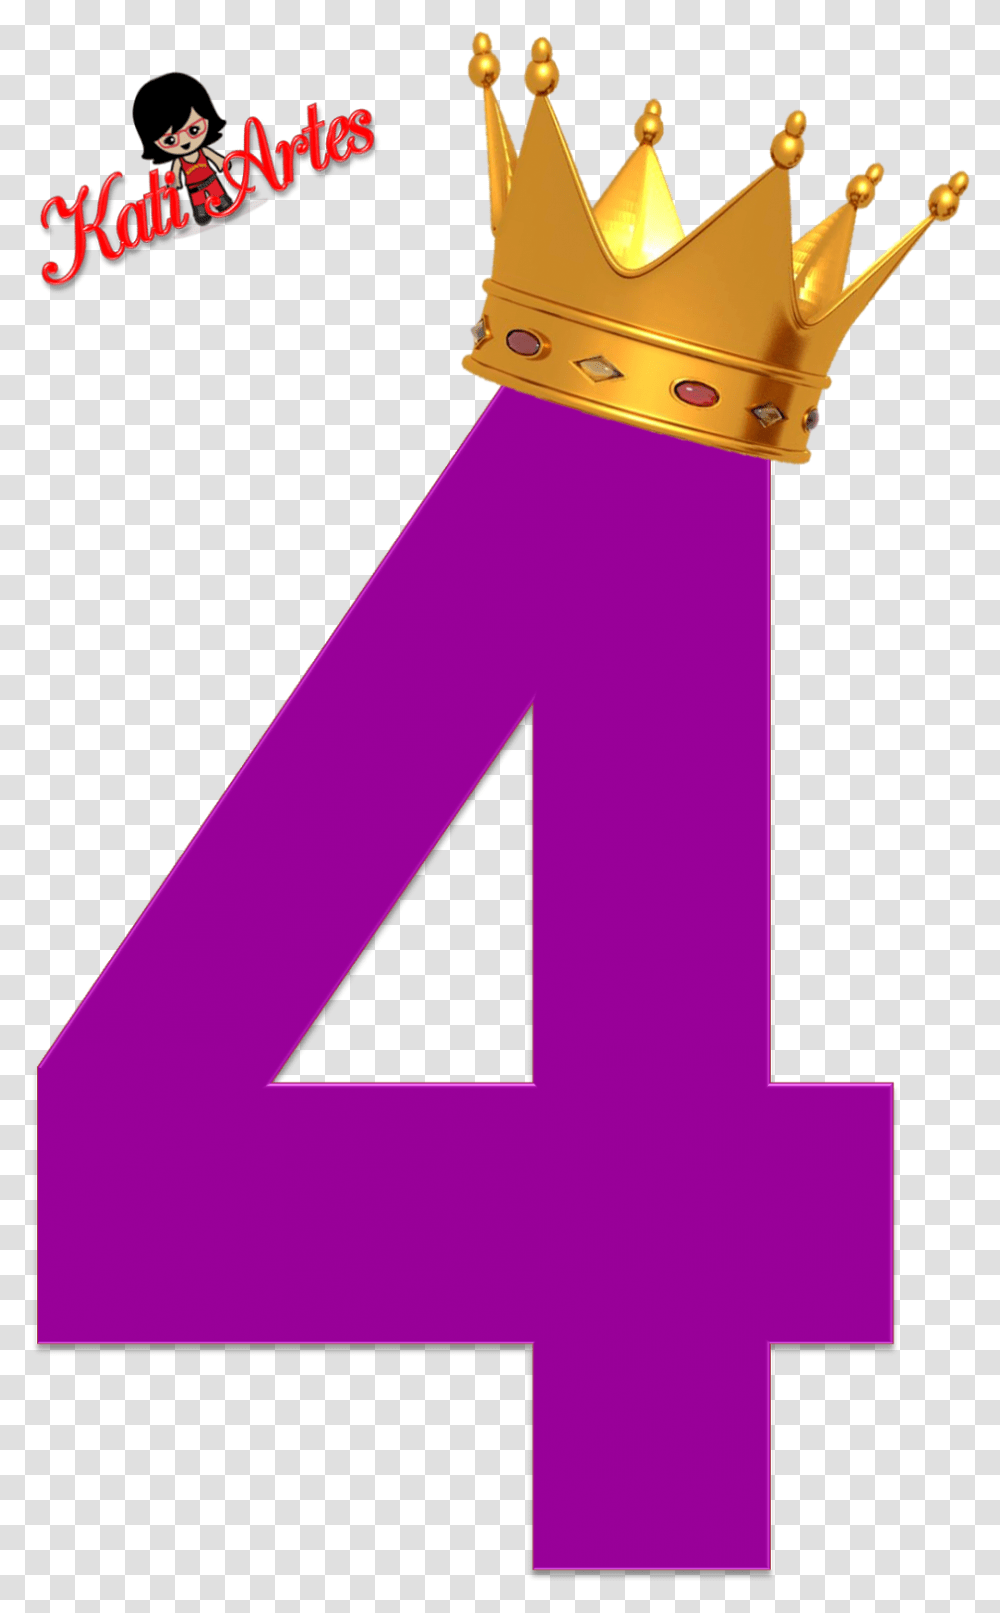 Corona Dorada De Princesa Numero 4 De La Princesa Sofia, Alphabet, Number Transparent Png